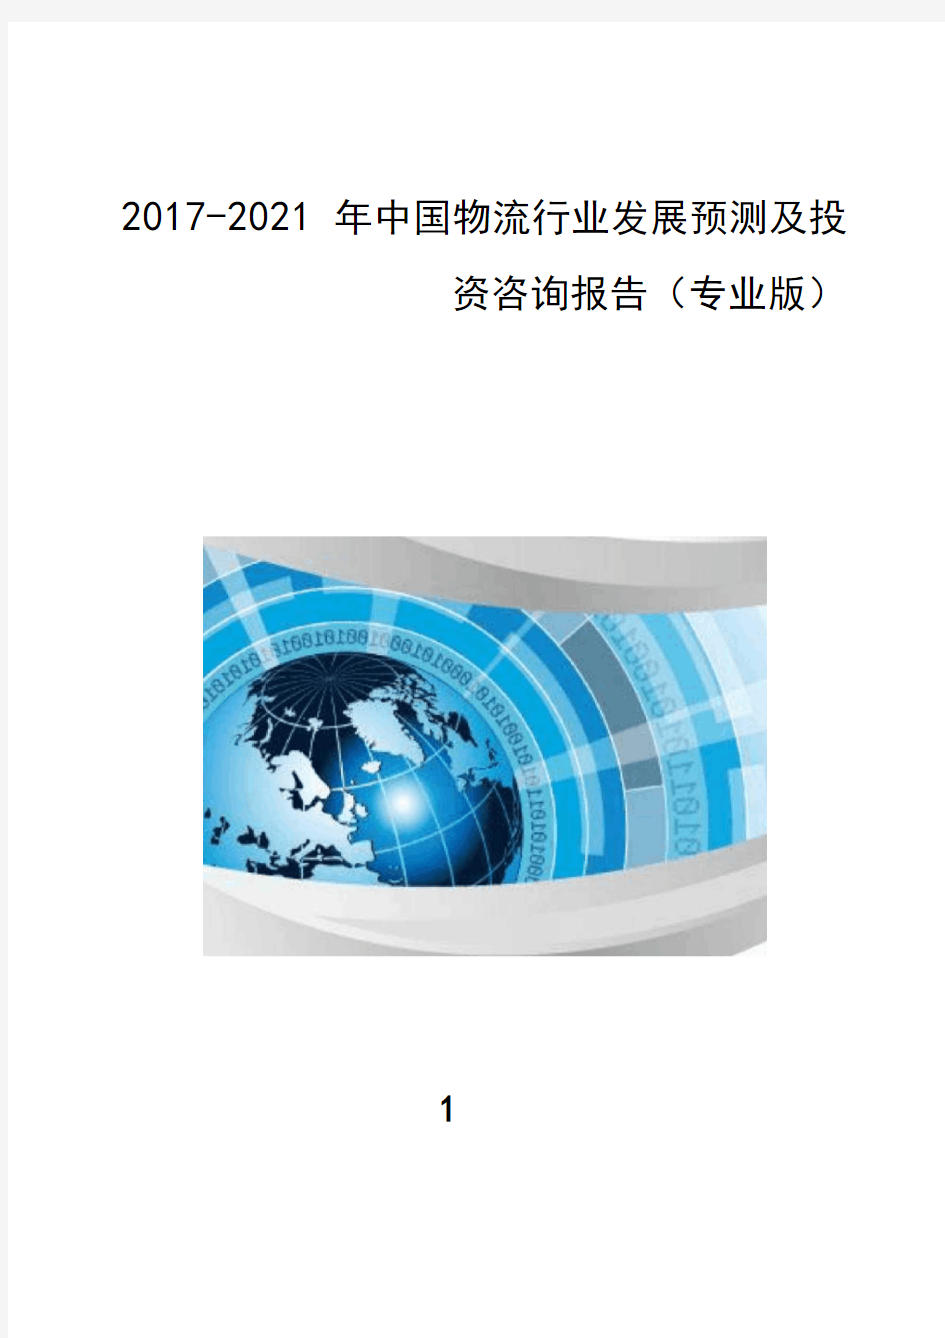 市场供需分析-2017-2021年中国物流行业发展预测及投资战略报告(目录)(专业版)